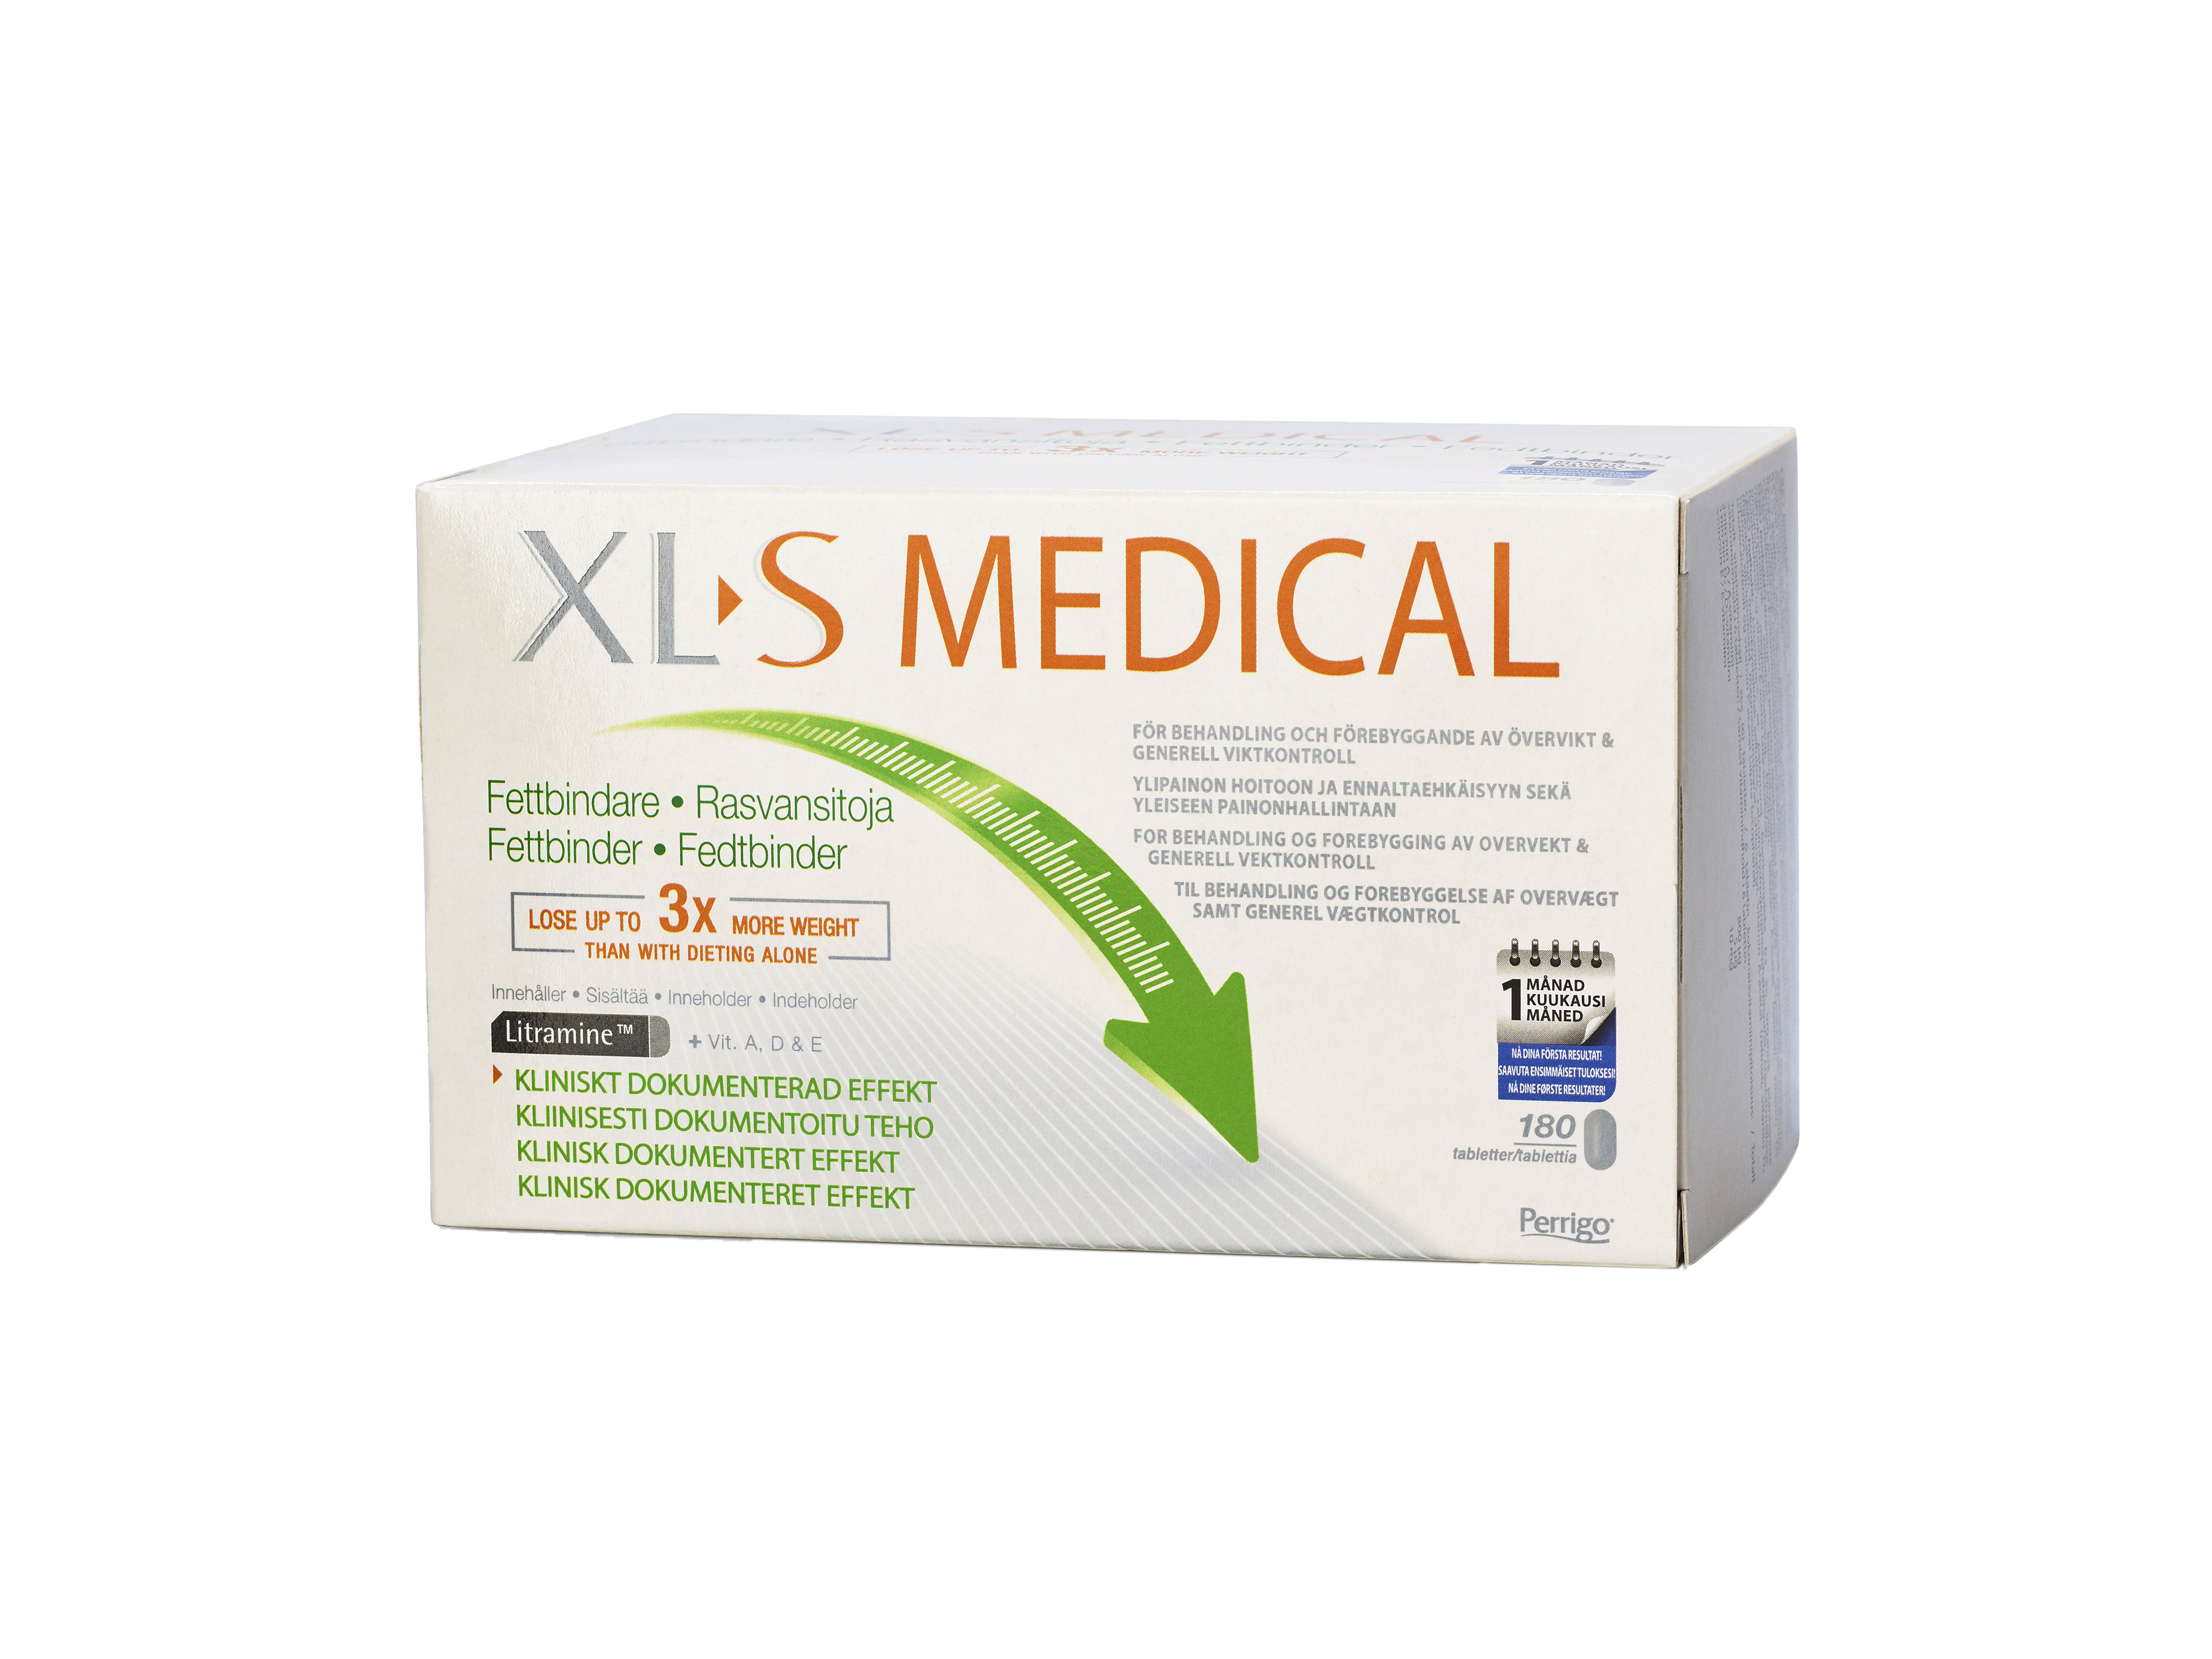 XL-S Medical fettbinder tabletter, 180 stk.